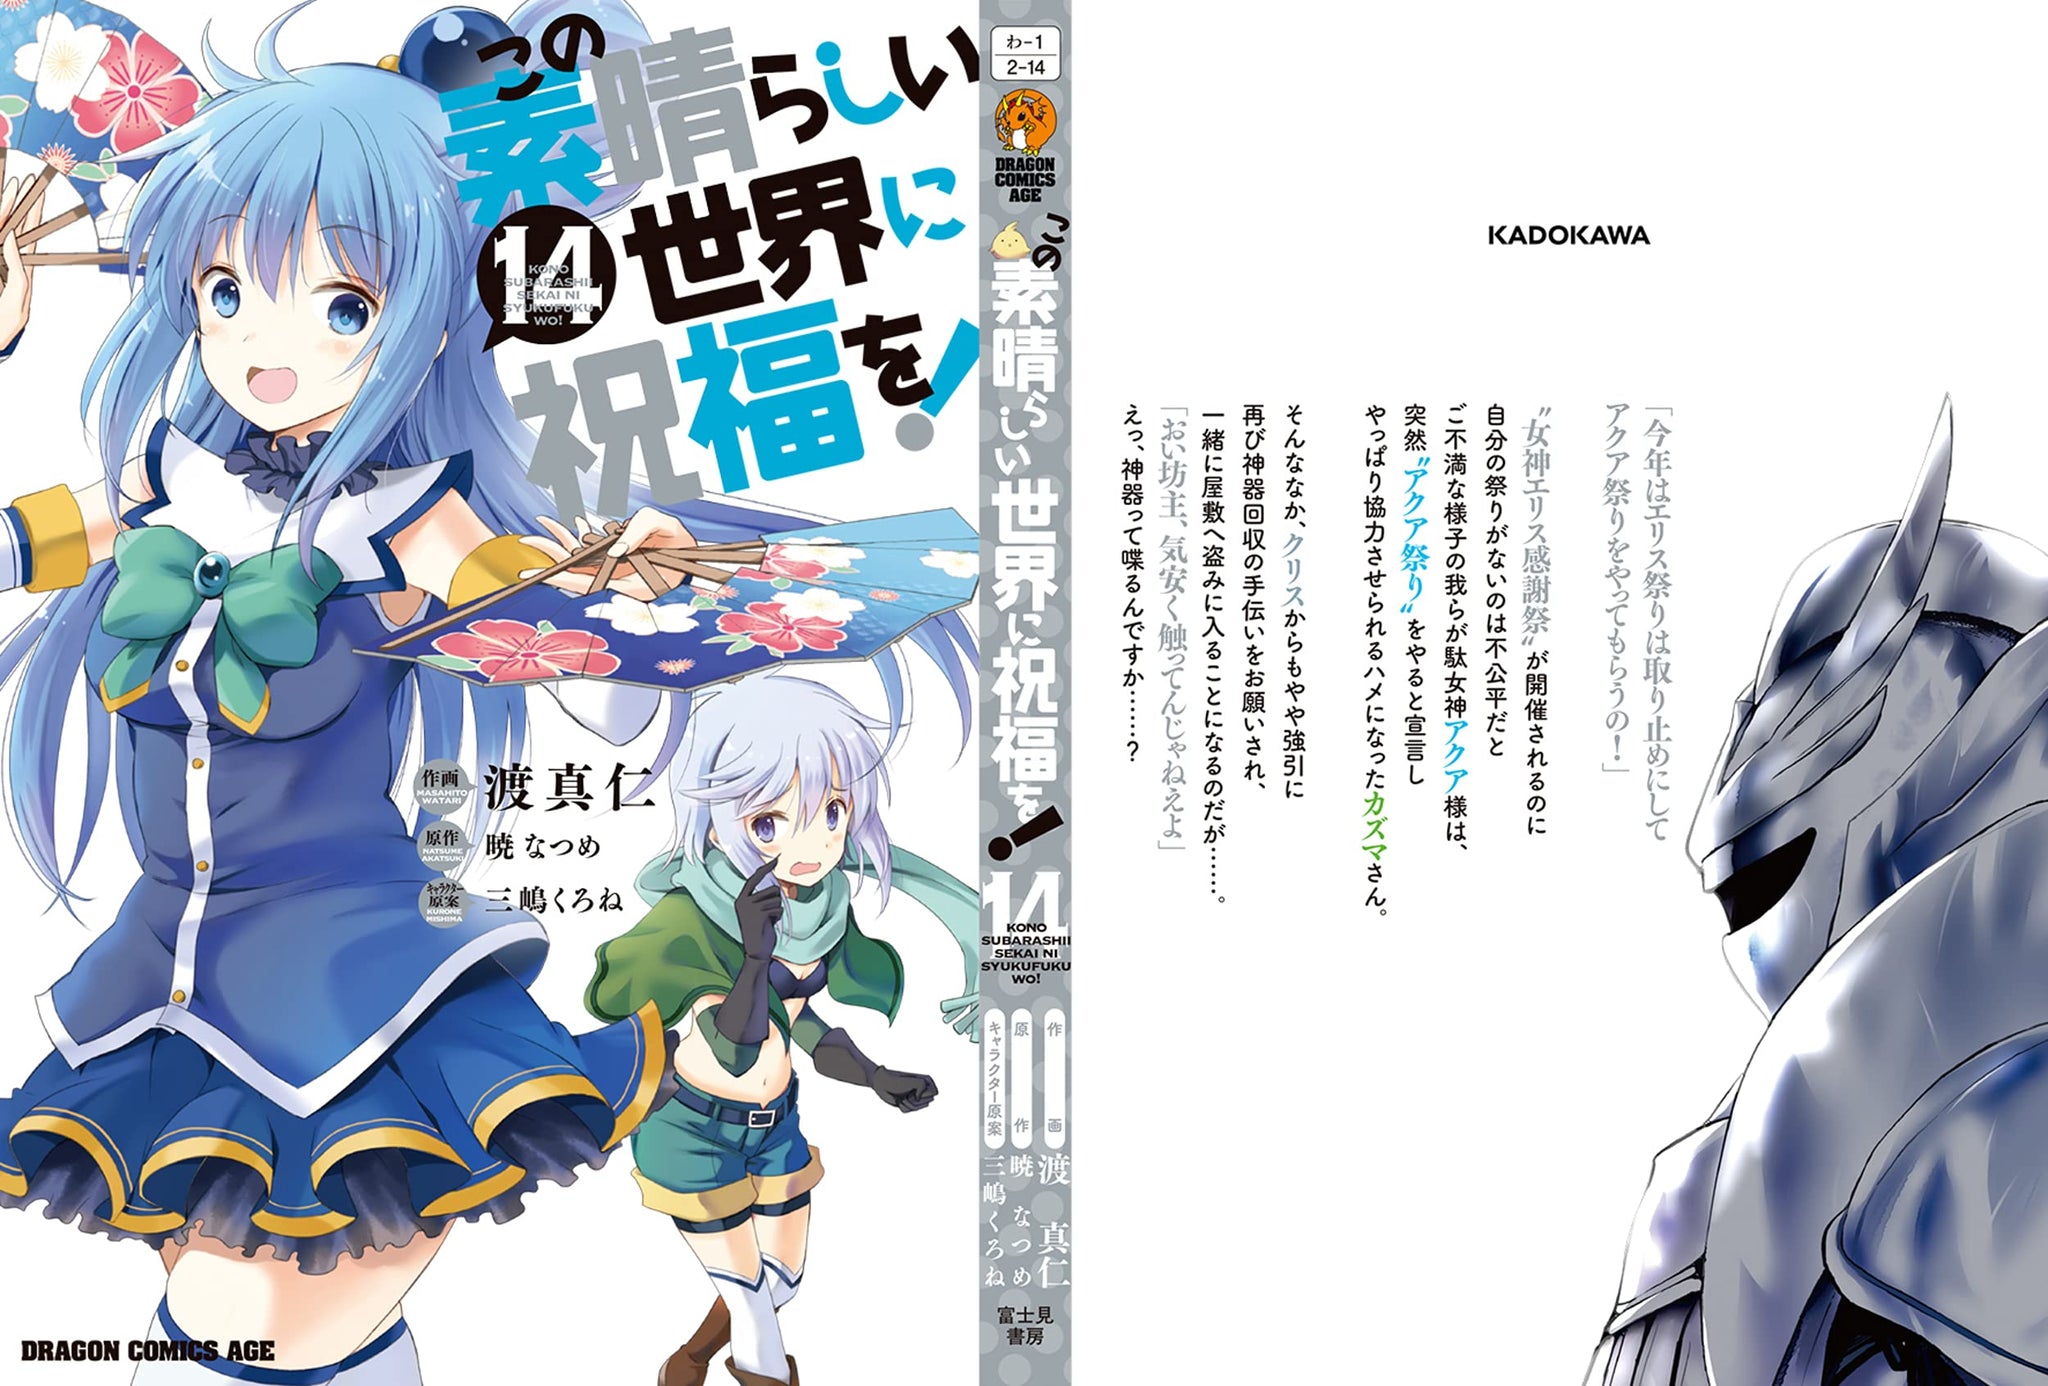 Kono Subarashii Sekai ni Shukufuku wo!  Light Novel - Pictures 